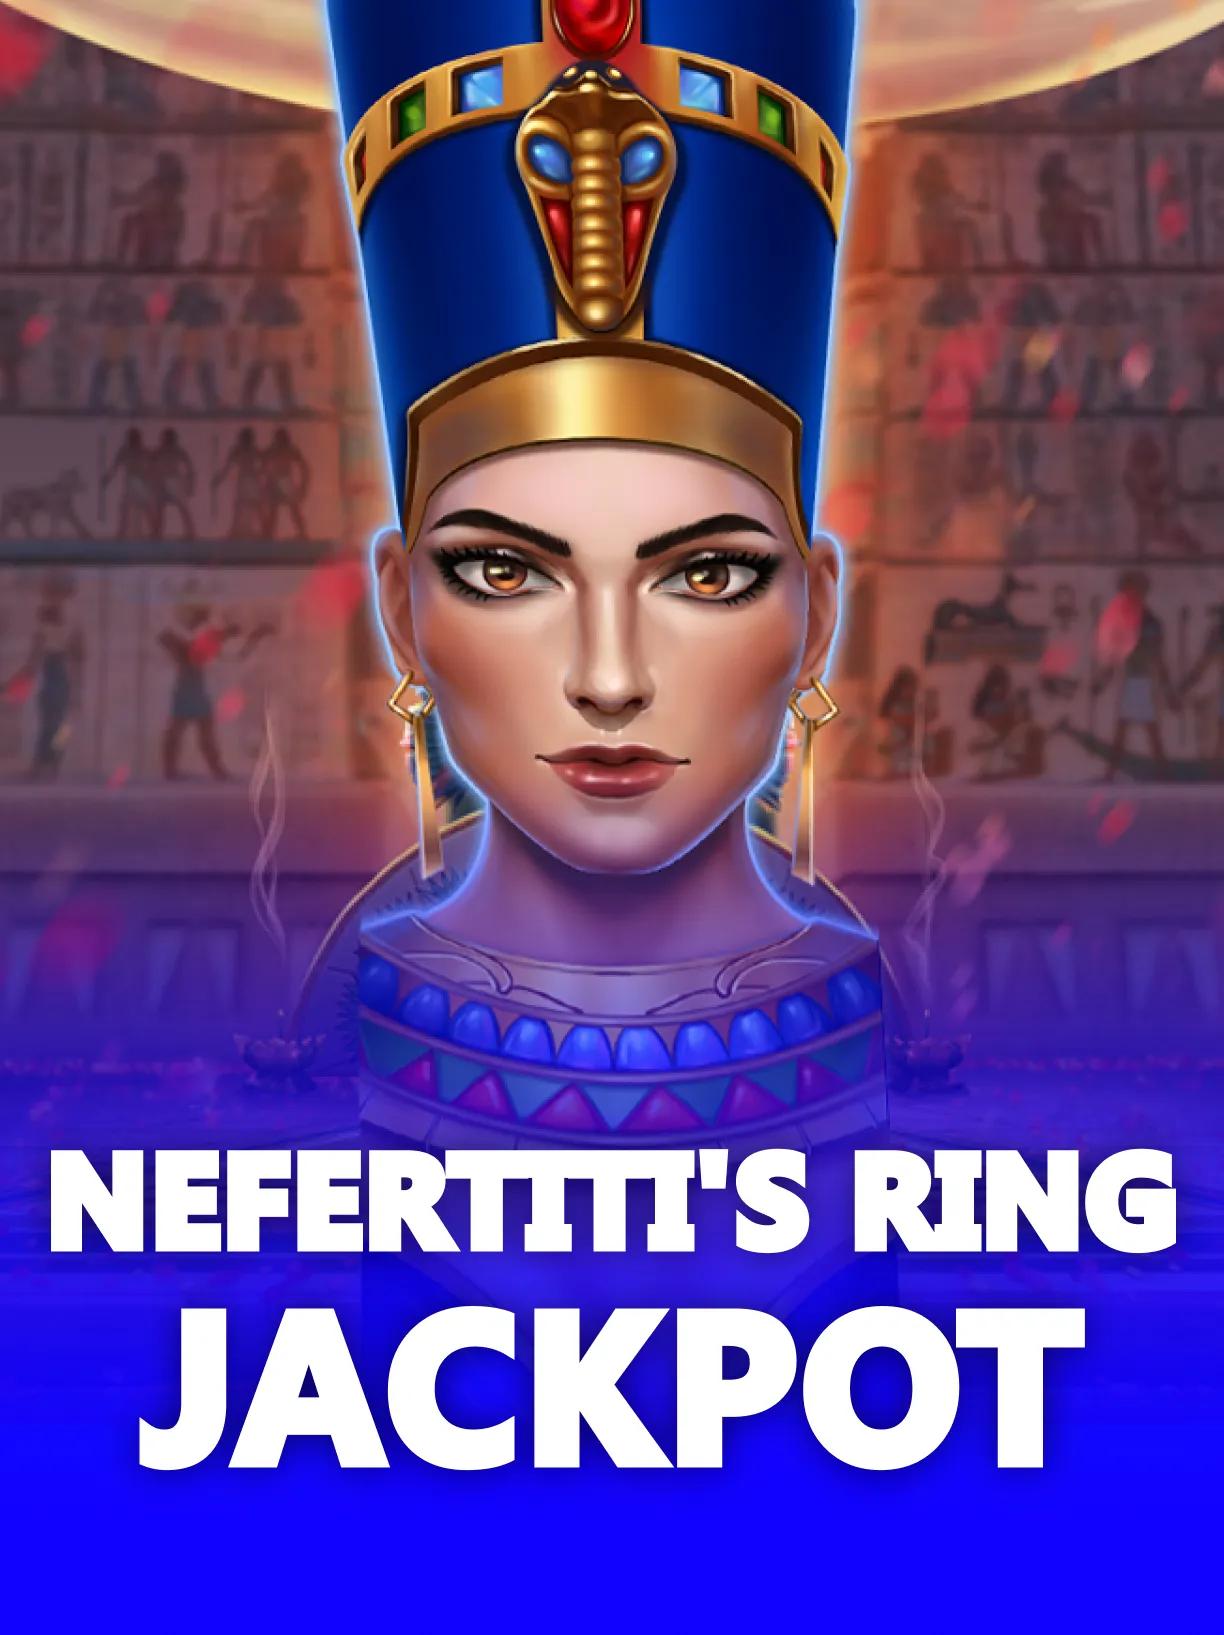 Nefertiti's Ring Jackpot